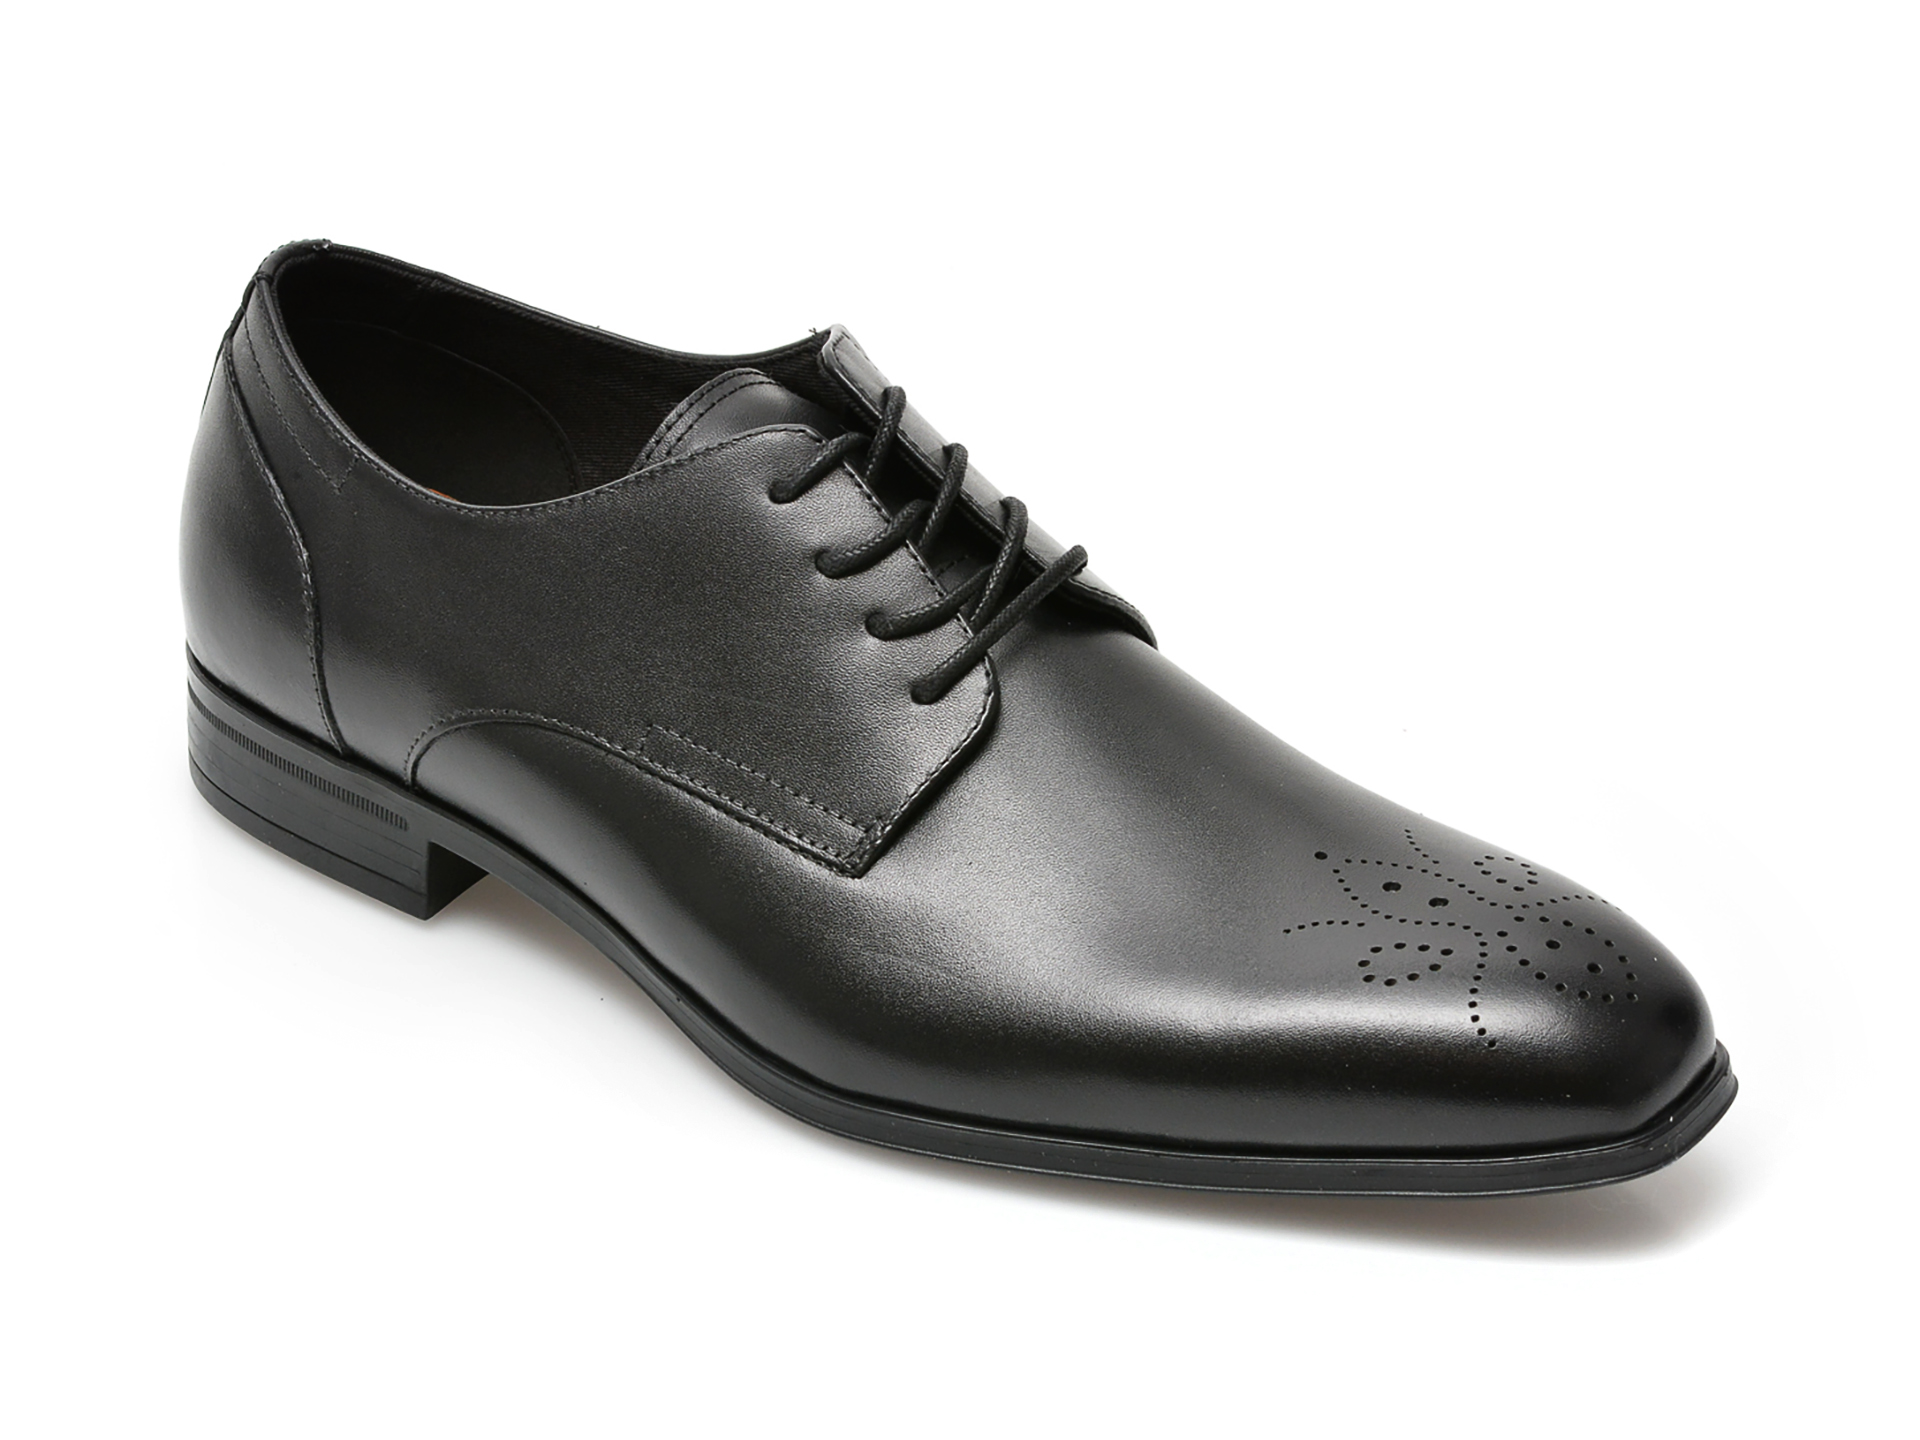 Pantofi ALDO negri, REYES001, din piele naturala Aldo Aldo